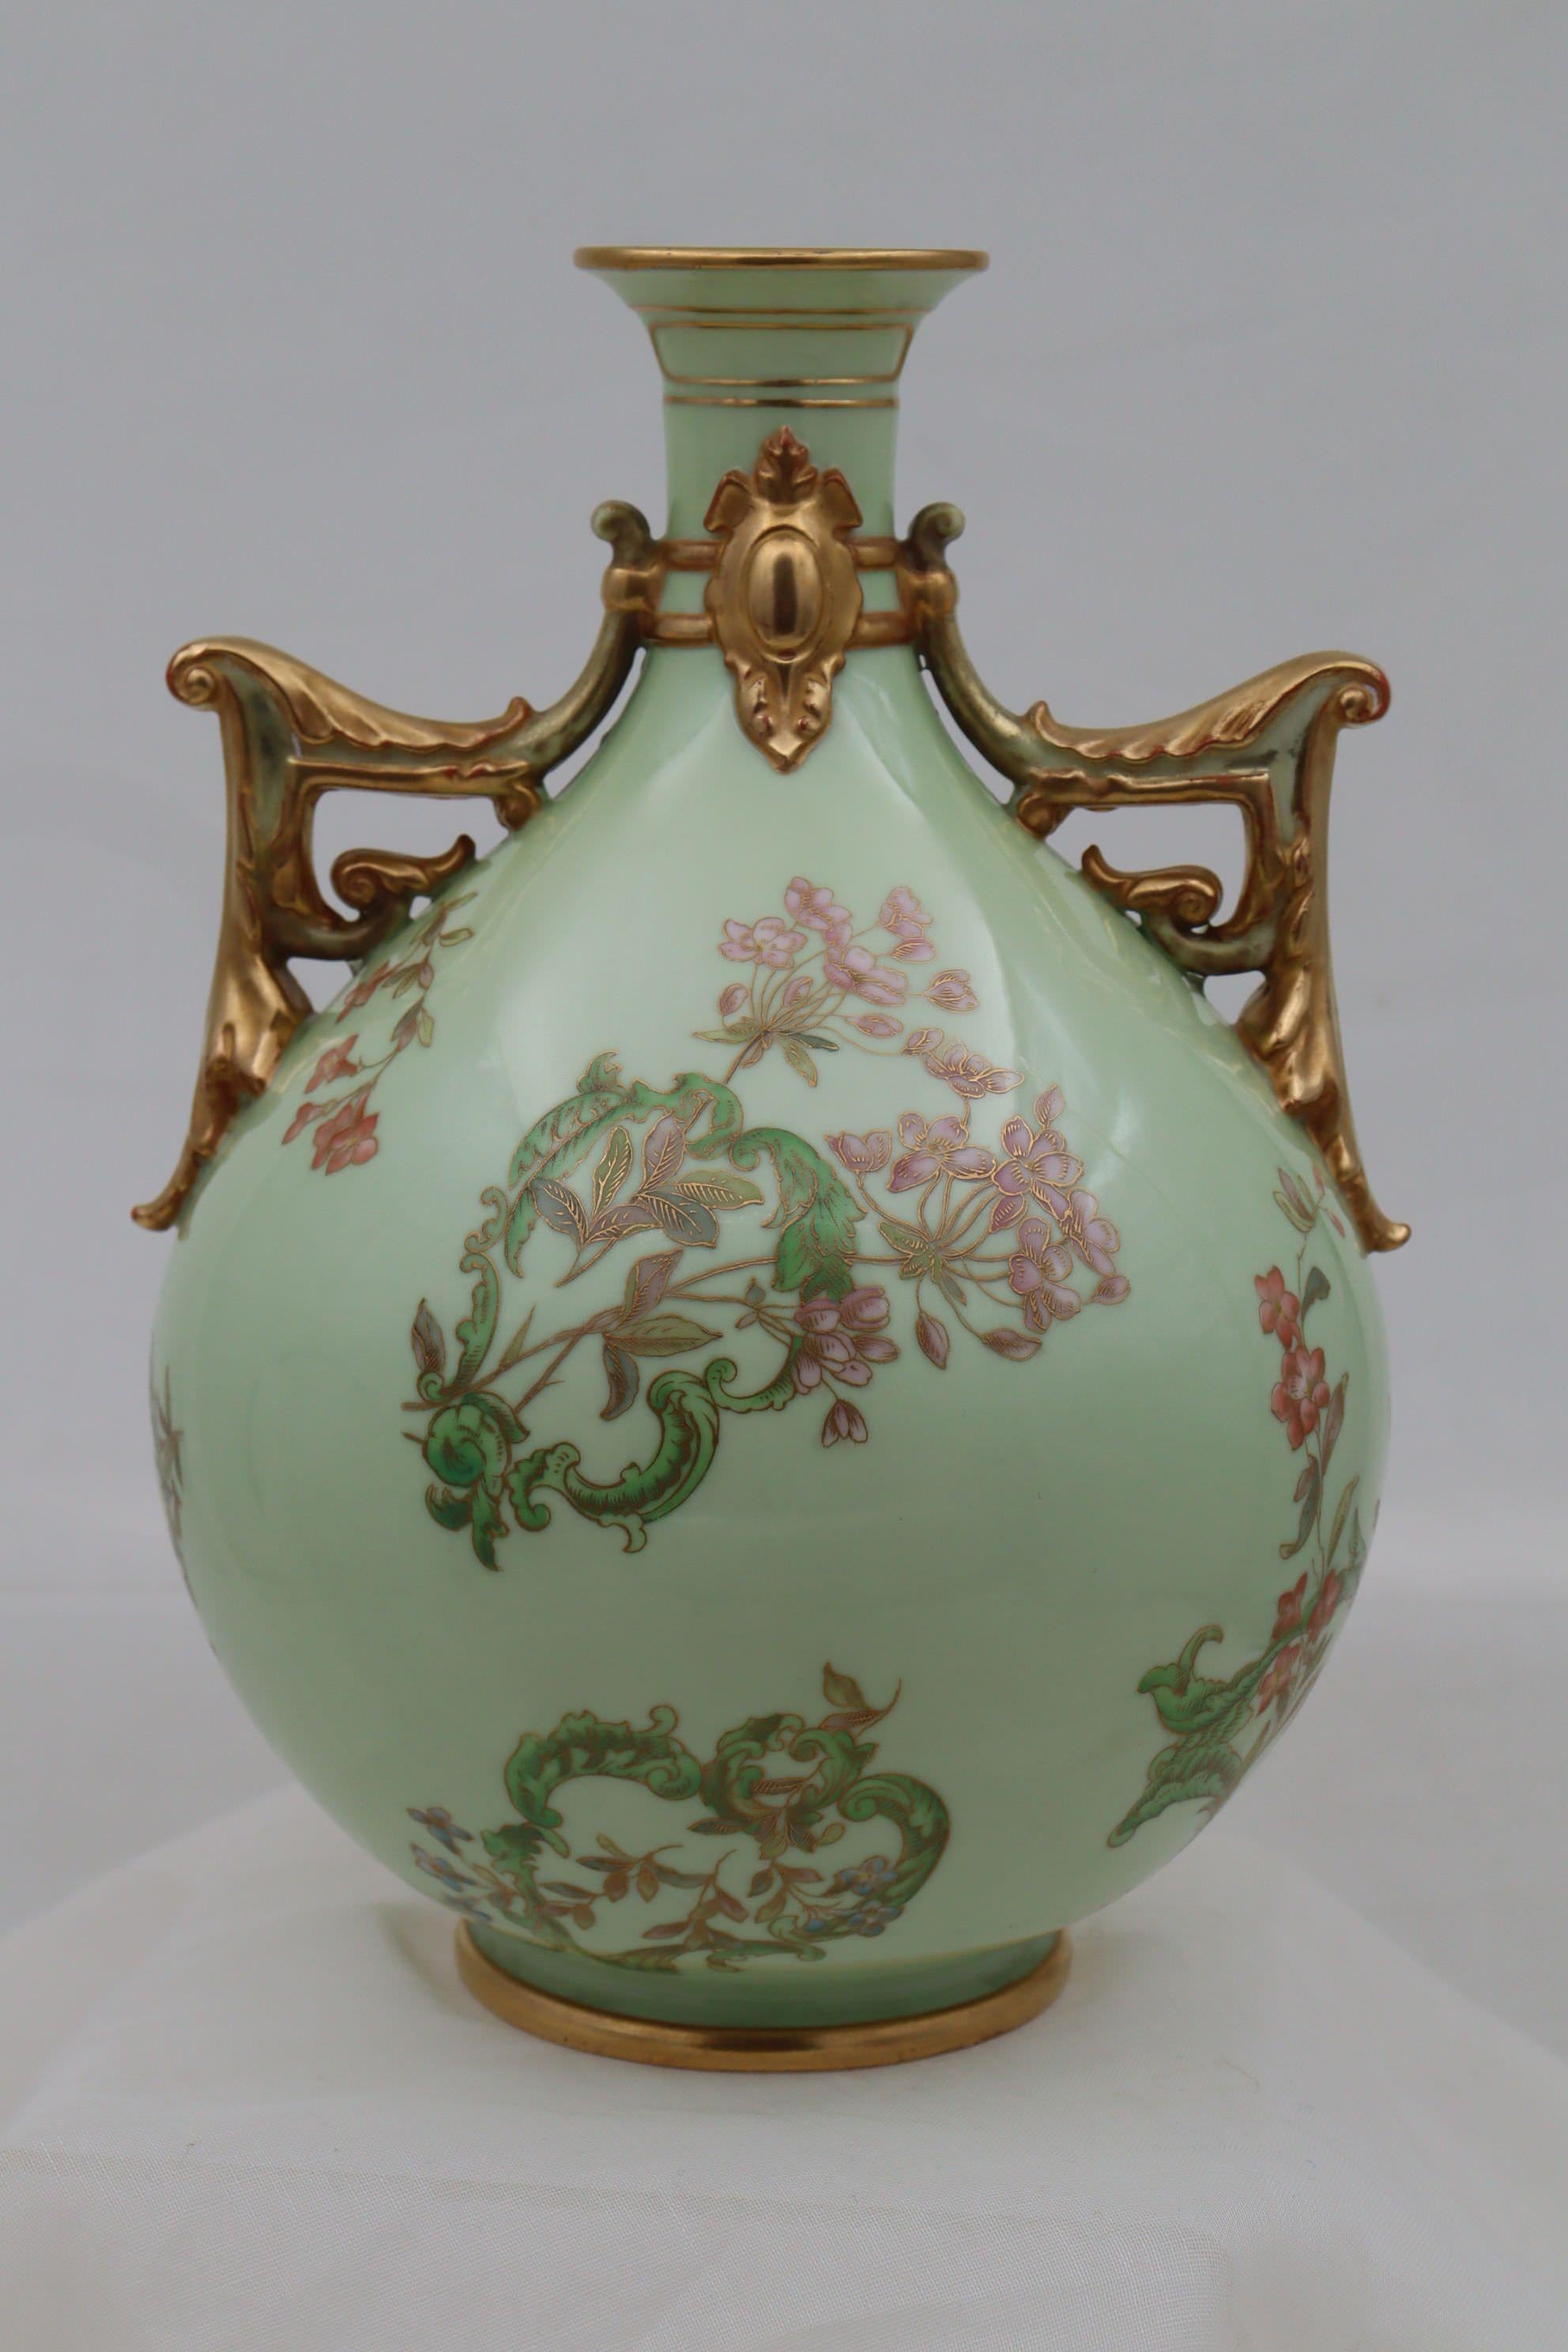 Diese kugelförmige Porzellanvase mit zwei Henkeln von Royal Worcester zeichnet sich durch ein ungewöhnliches handgemaltes und vergoldetes Dekor aus, das aus einer Reihe unregelmäßig geformter Kartuschen besteht, die von stilisiertem Laub gebildet